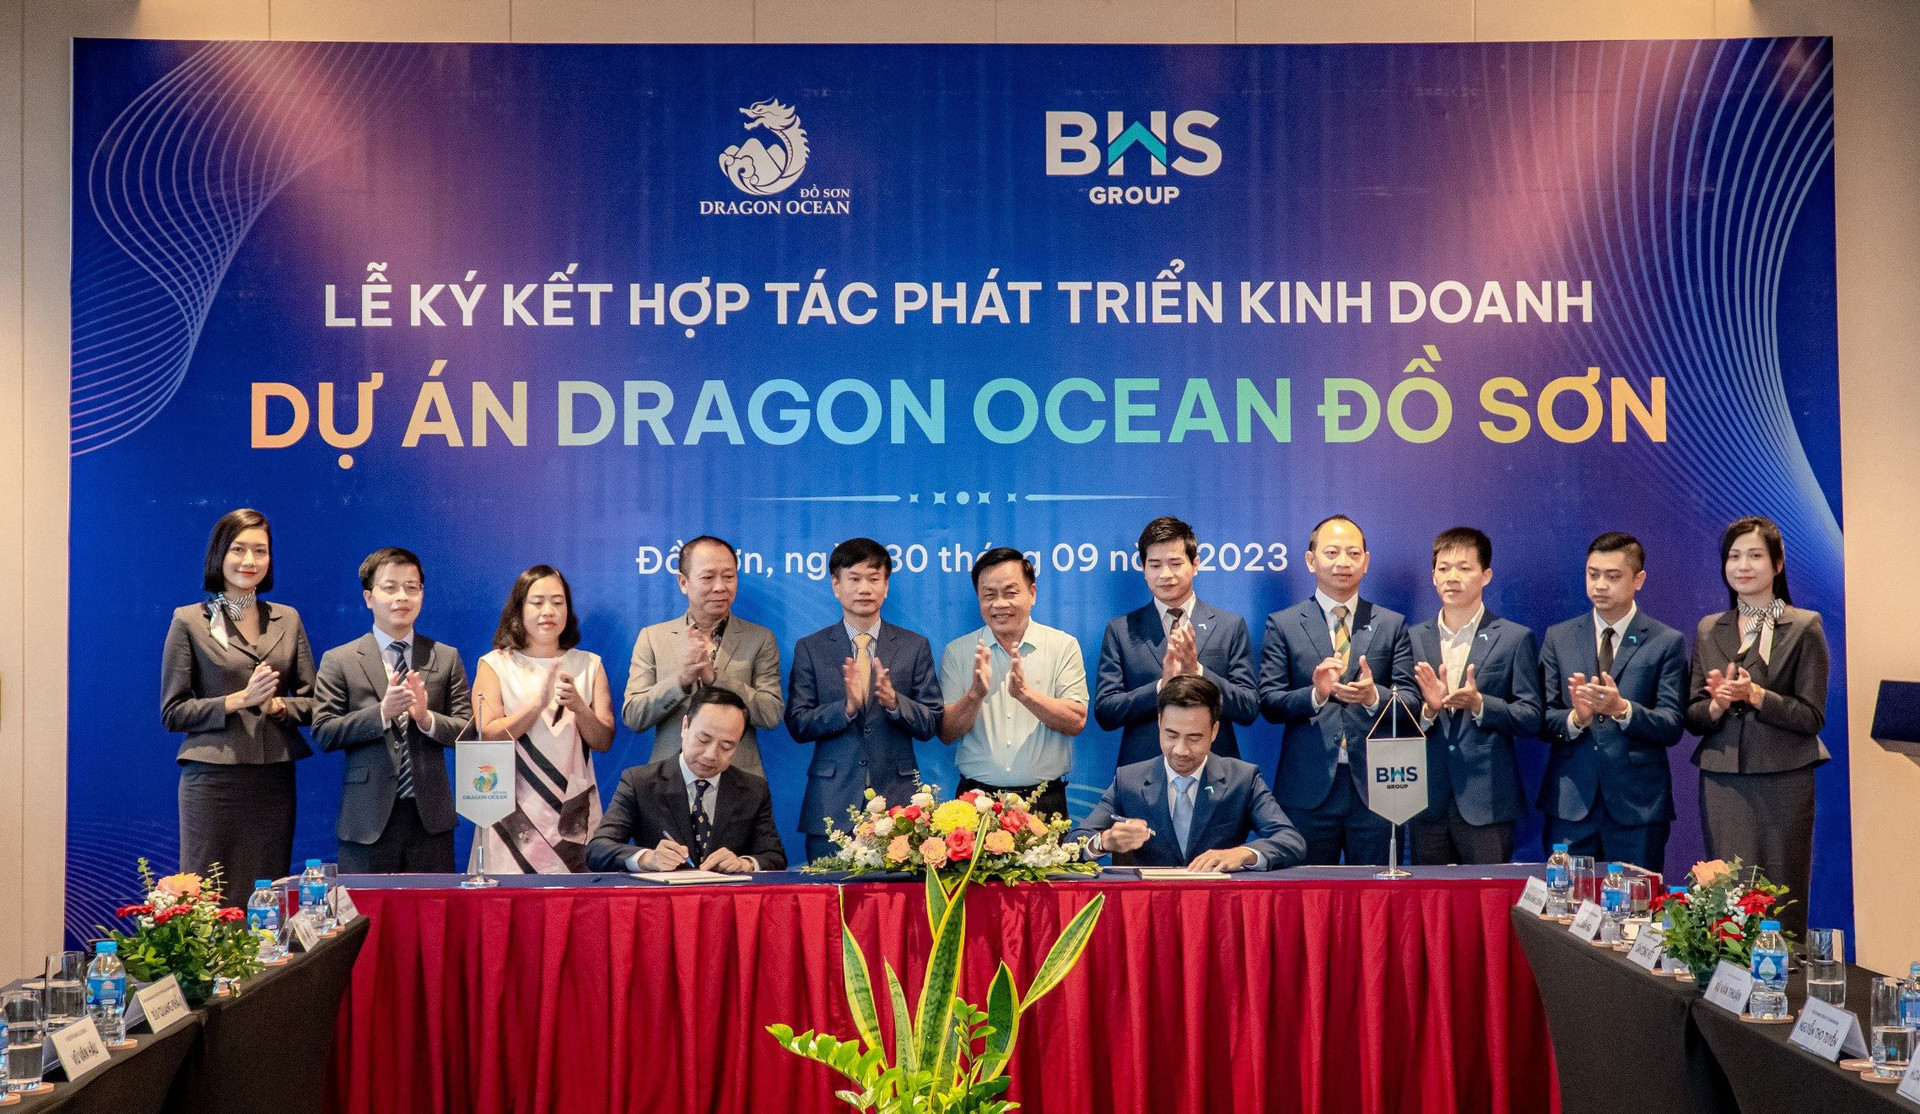 BHS Group chính thức hợp tác phát triển kinh doanh dự án Dragon Ocean Đồ Sơn